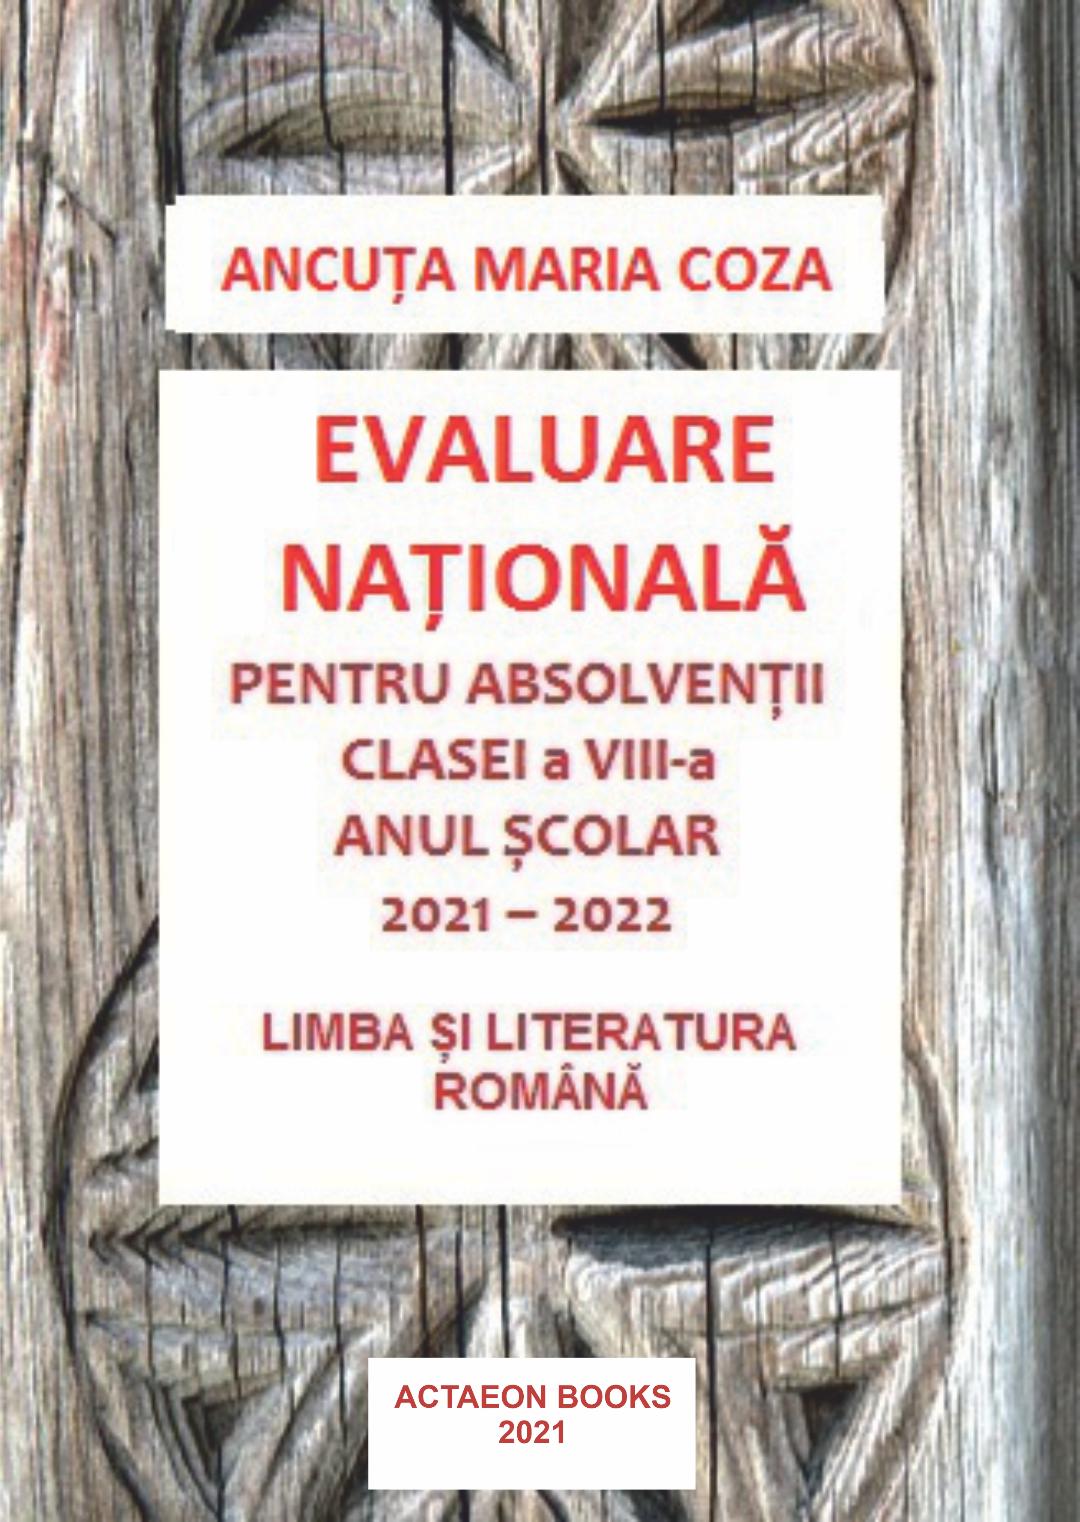 ANCUȚA MARIA COZA EVALUARE NAȚIONALĂ‚
PENTRU ABSOLVENȚII CLASEI A VIII-A
ANUL ȘCOLAR 2021-2022
LIMBA ȘI LITERATURA ROMÂNĂ